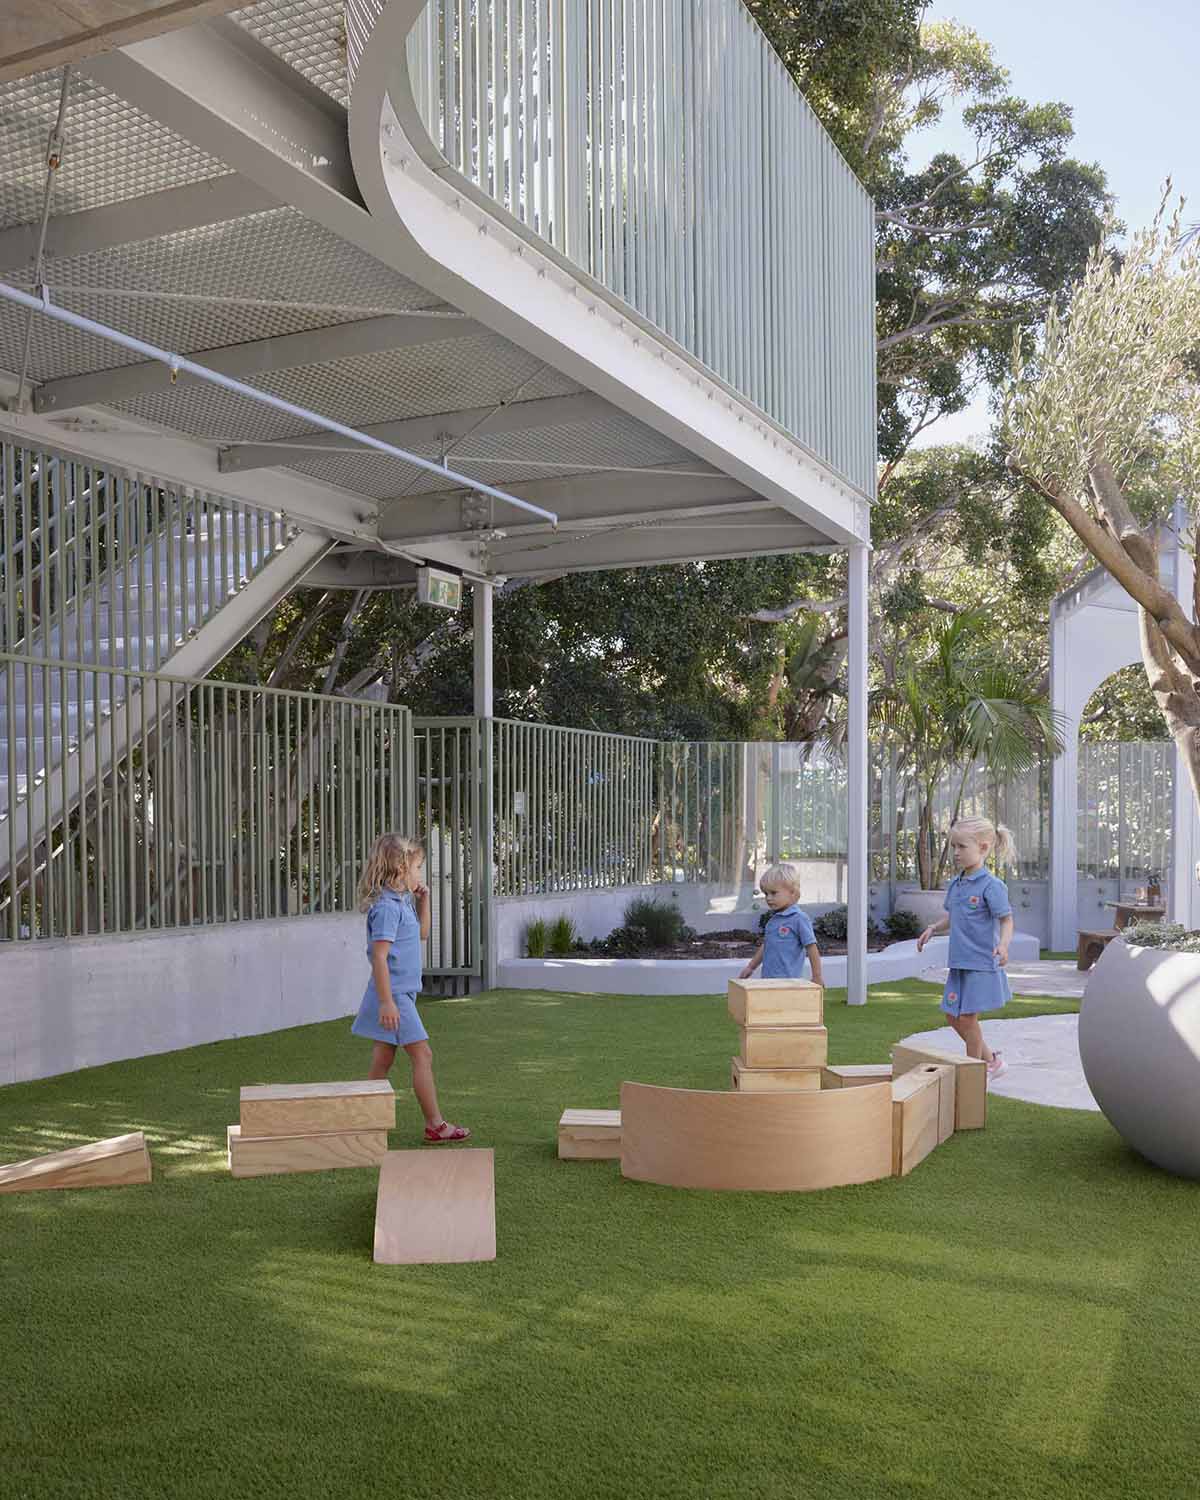 幼儿园设计,校园设计,学校设计,幼儿园设计案例,幼儿园设计方案,建筑设计,教育建筑设计,儿童保育中心,悉尼,SJB Architects,Supercontext Architecture